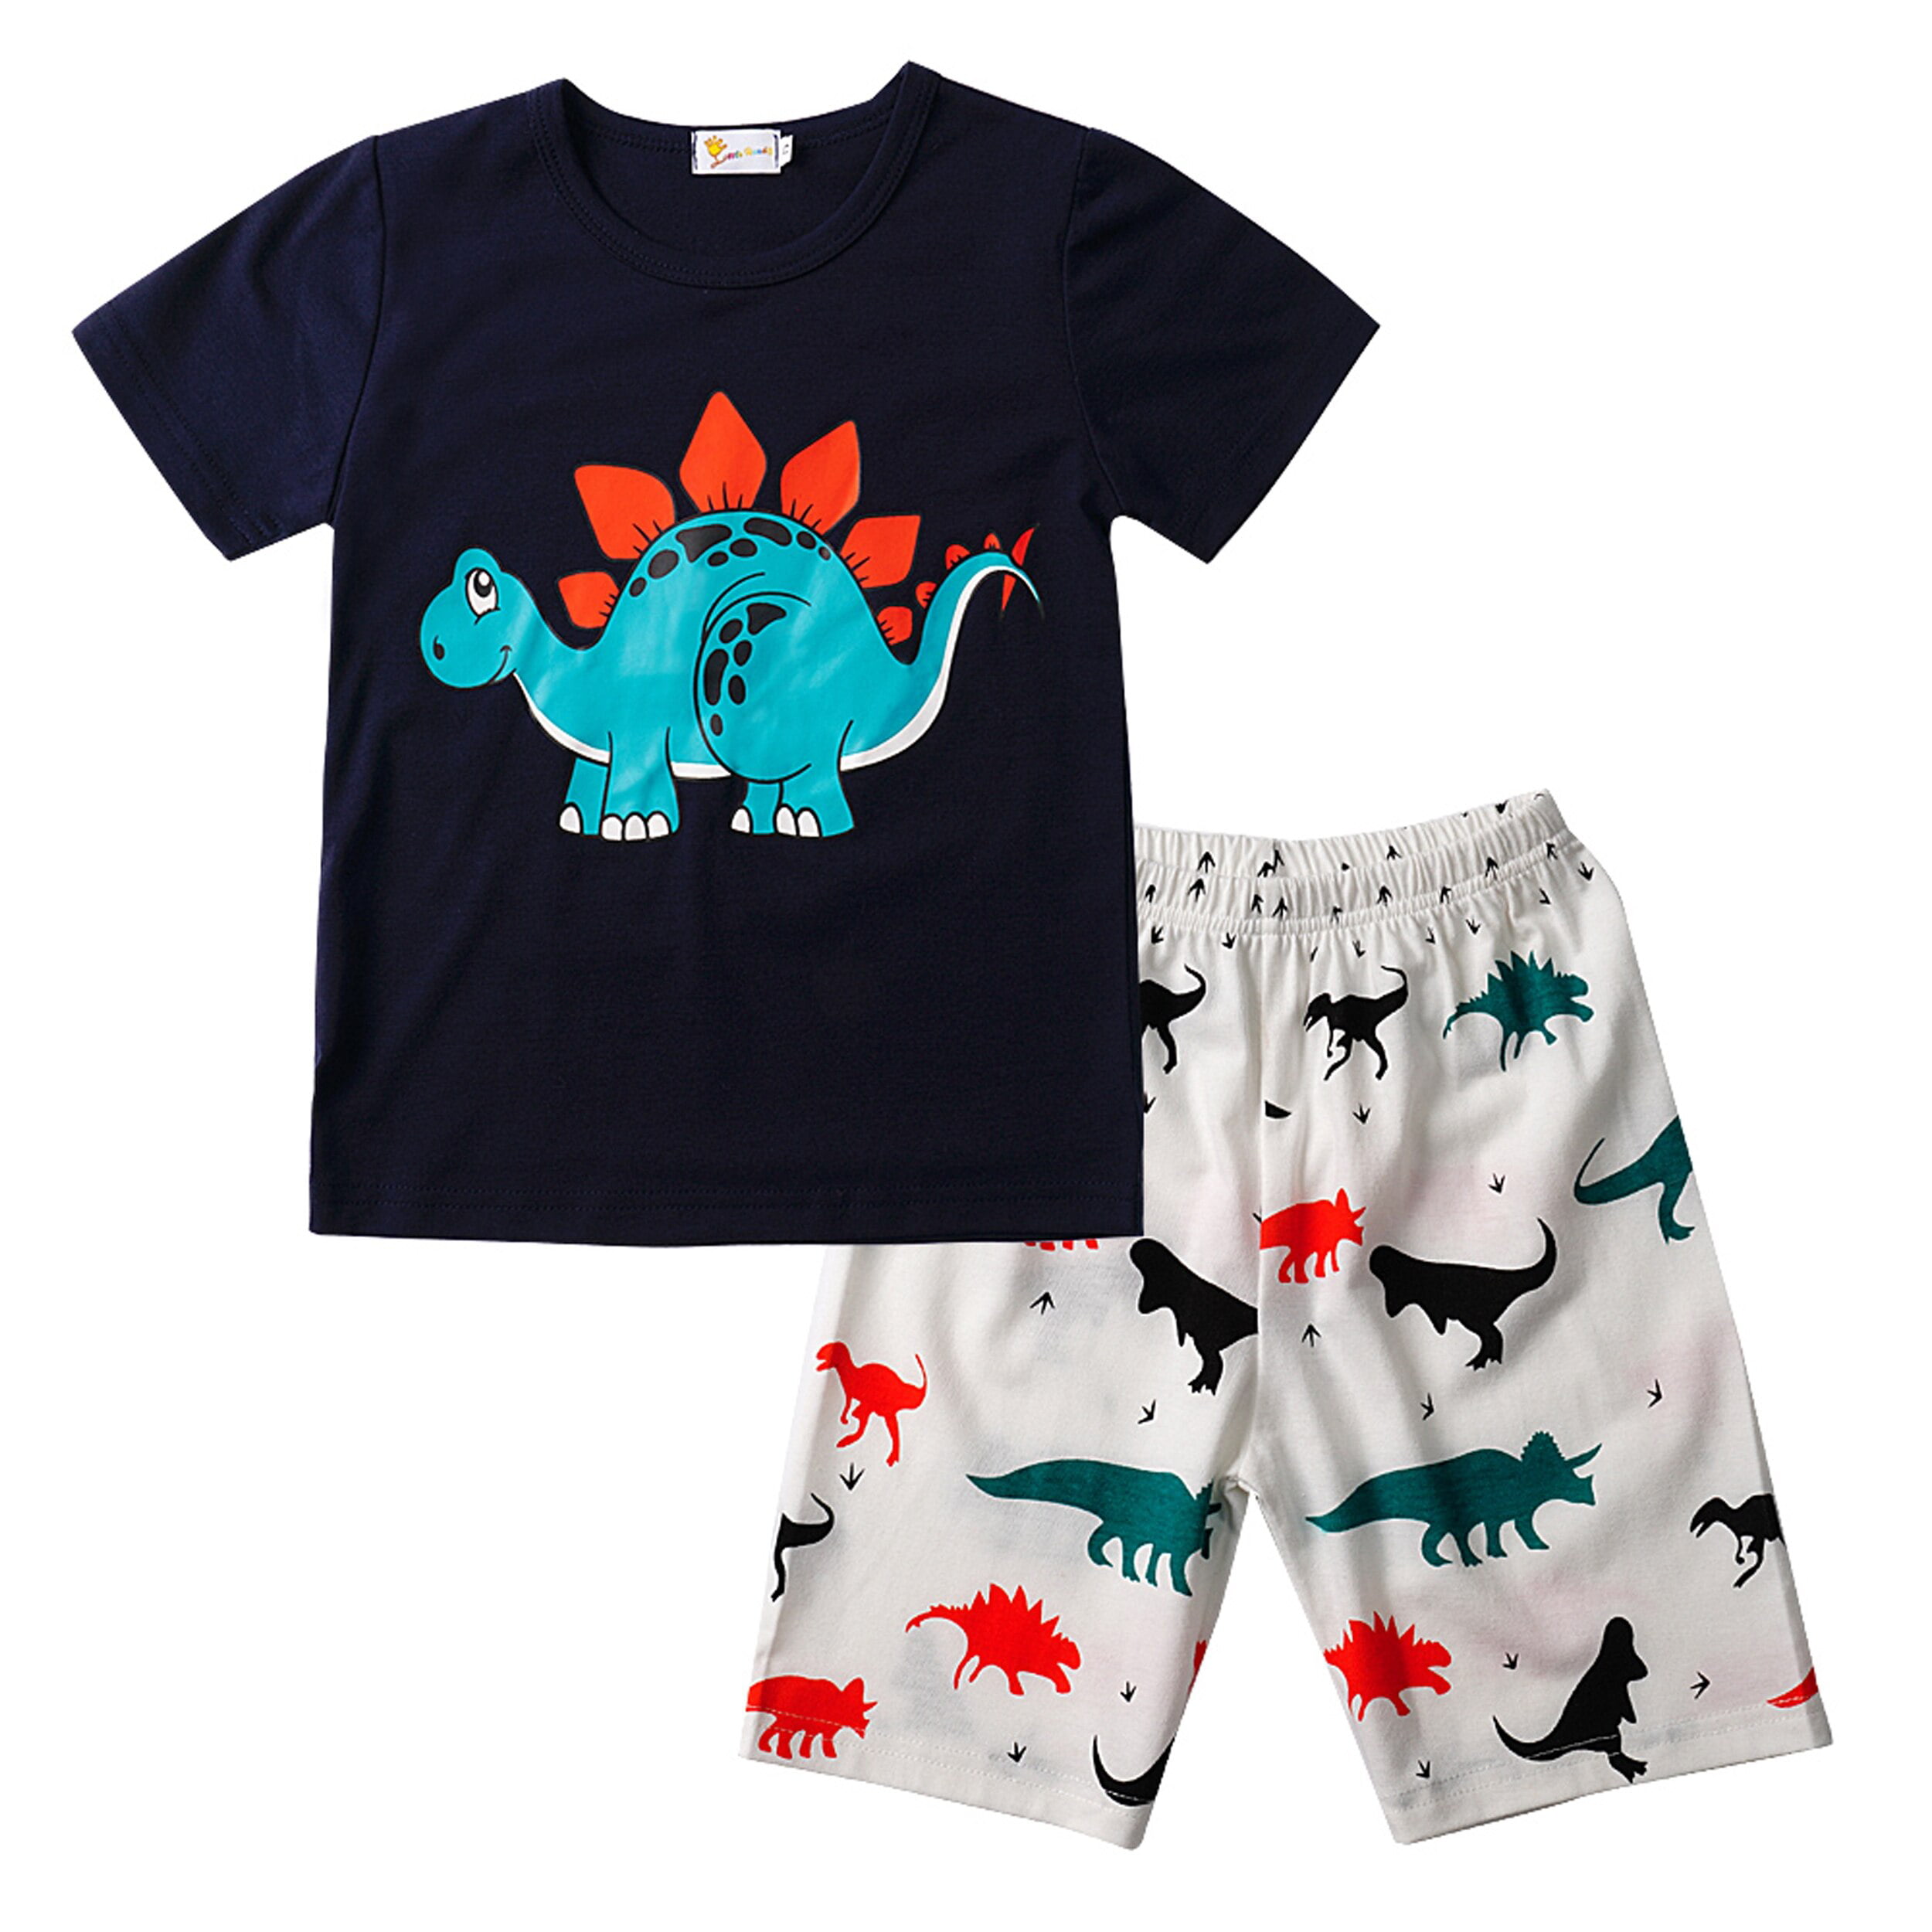 Little Big Boys Summer Pajamas Short 100% Cotton Kids Pjs Sets 2T-7T ...